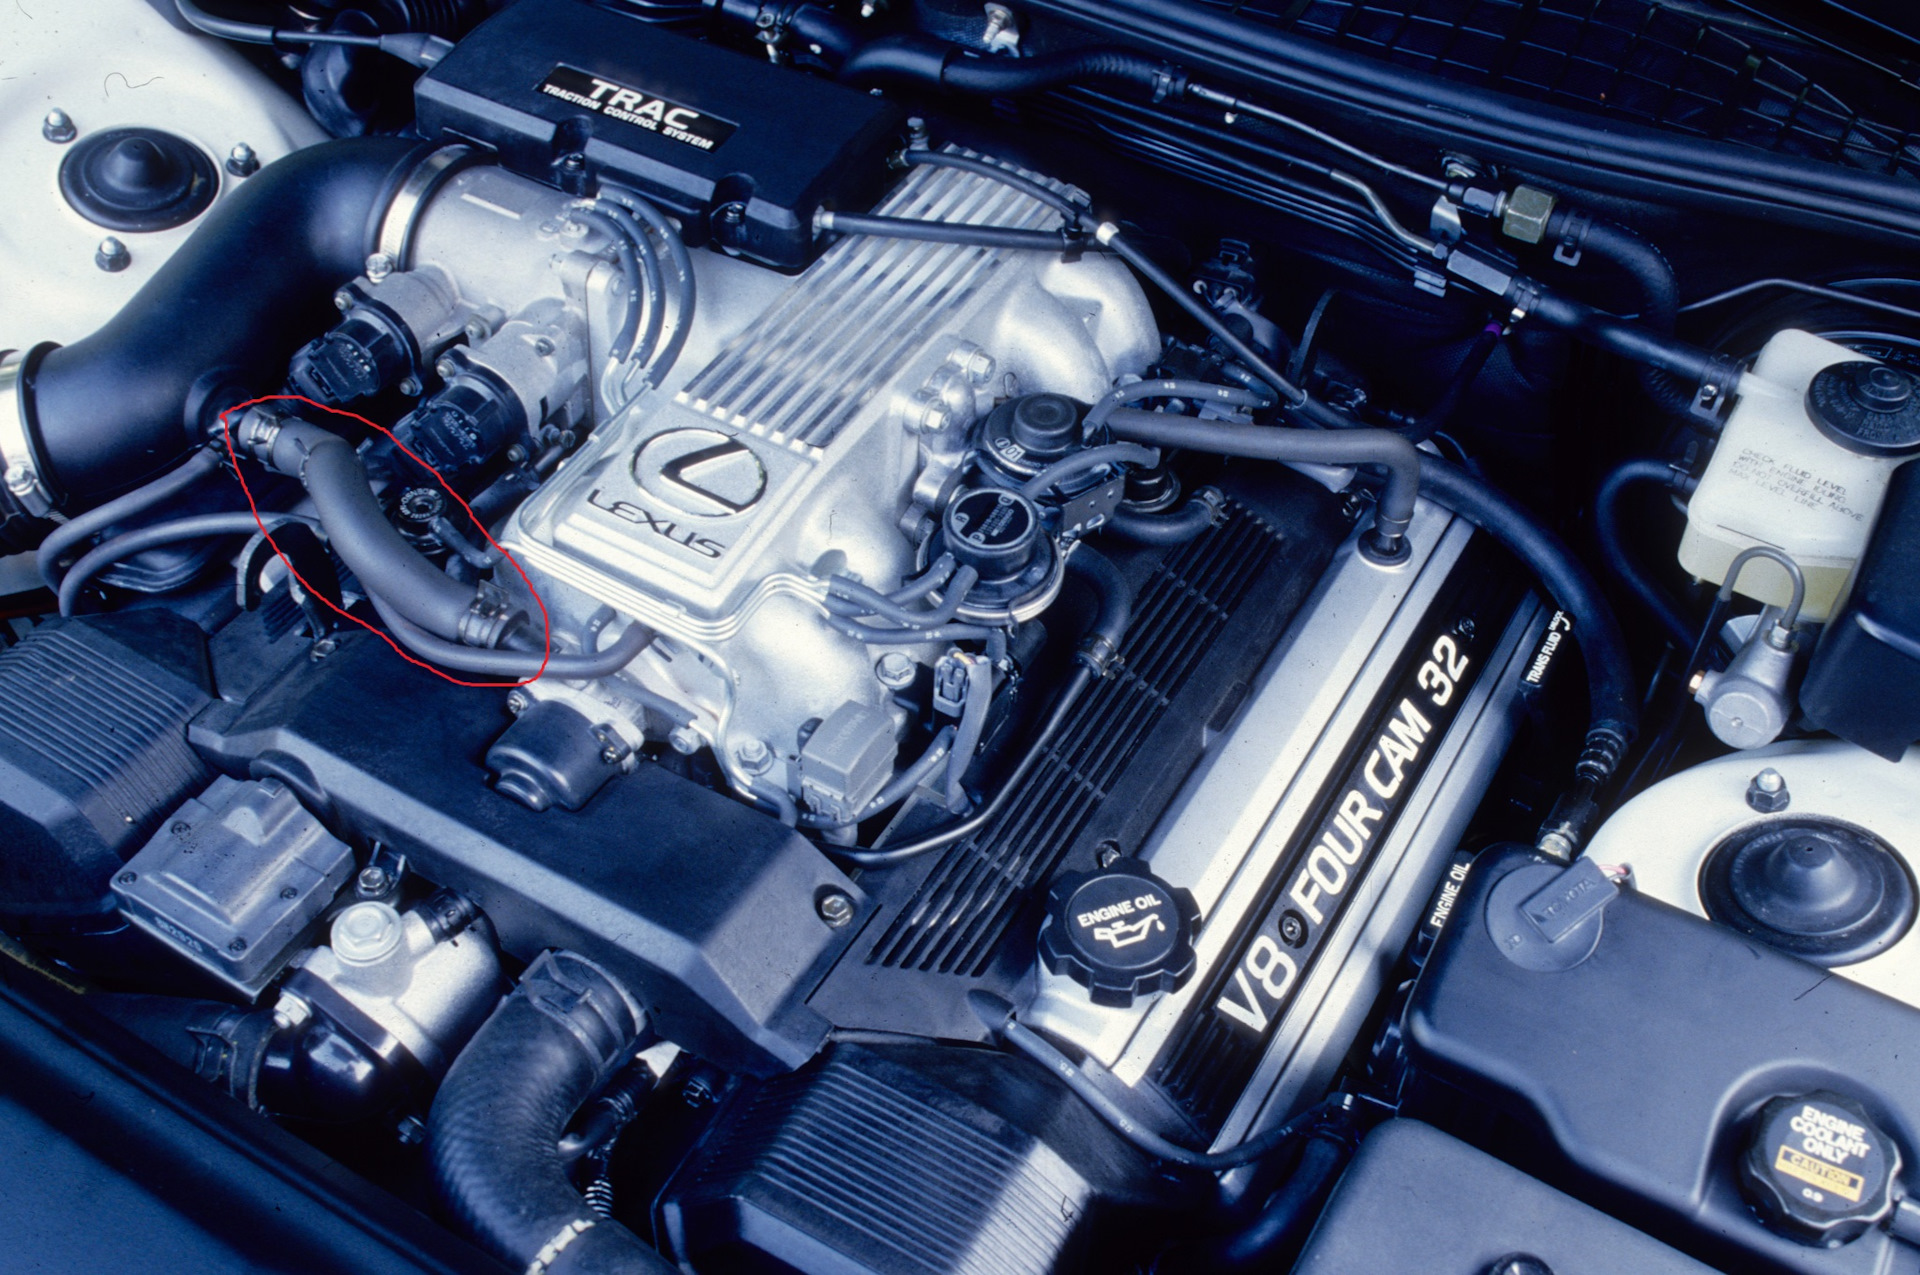 Двигатель toyota 1uz-fe: модификации, характеристики, конструкция